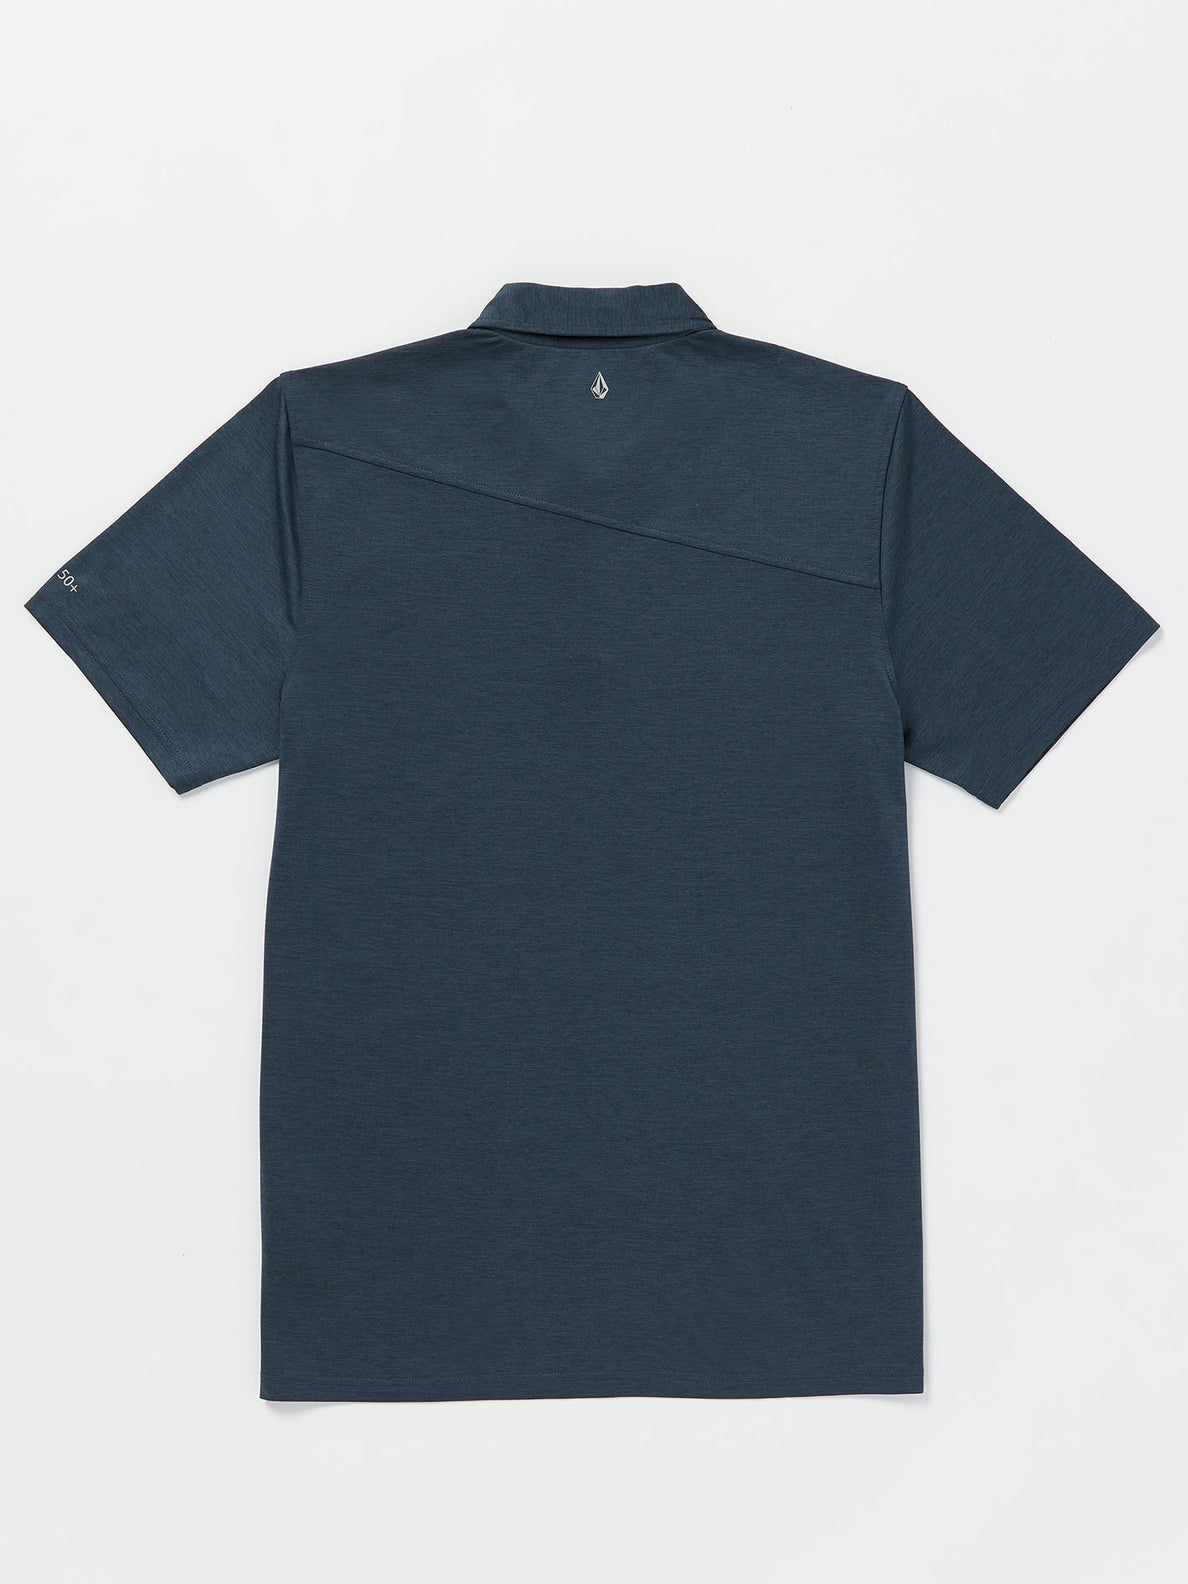 Hodad Polo Short Sleeve Shirt - Navy Paint